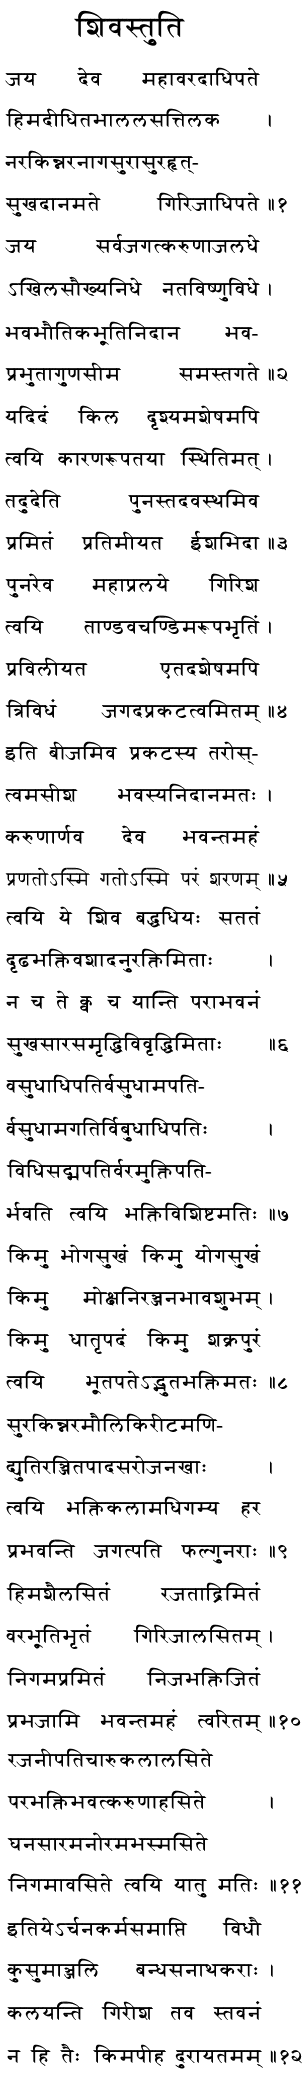 Shiv Stuti by Ravan | Siva Stuti by Ravana | Sanskrit Stuti